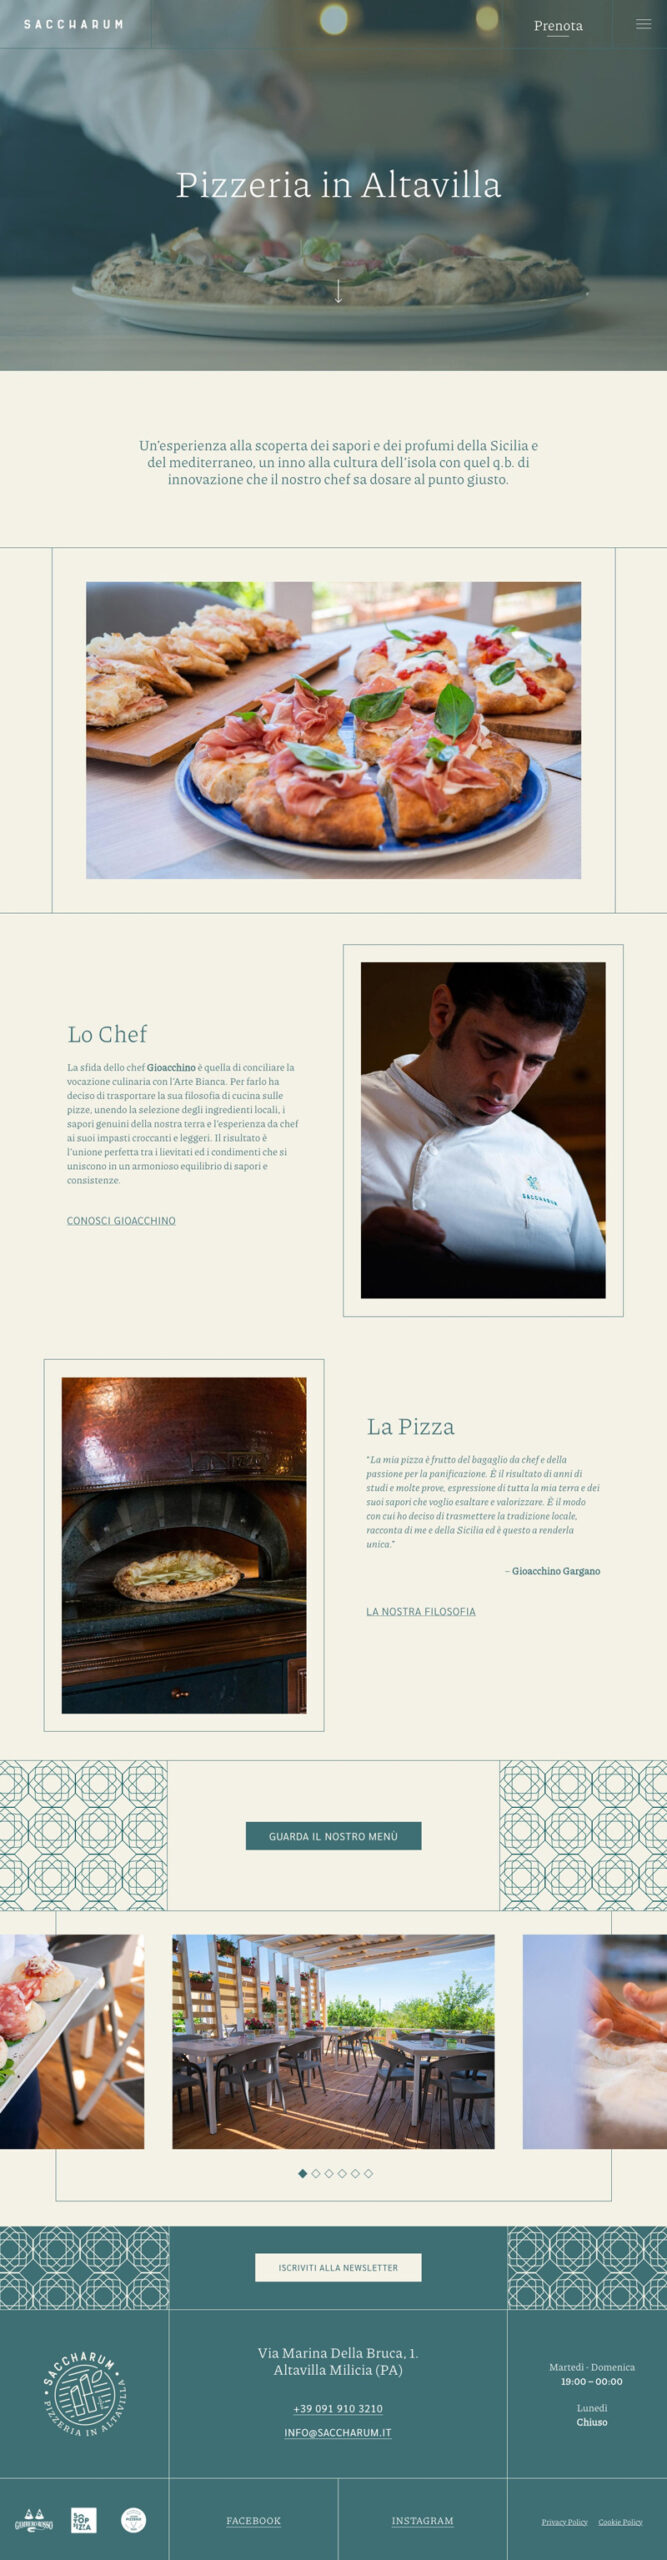 La Cook Work Saccharum Website